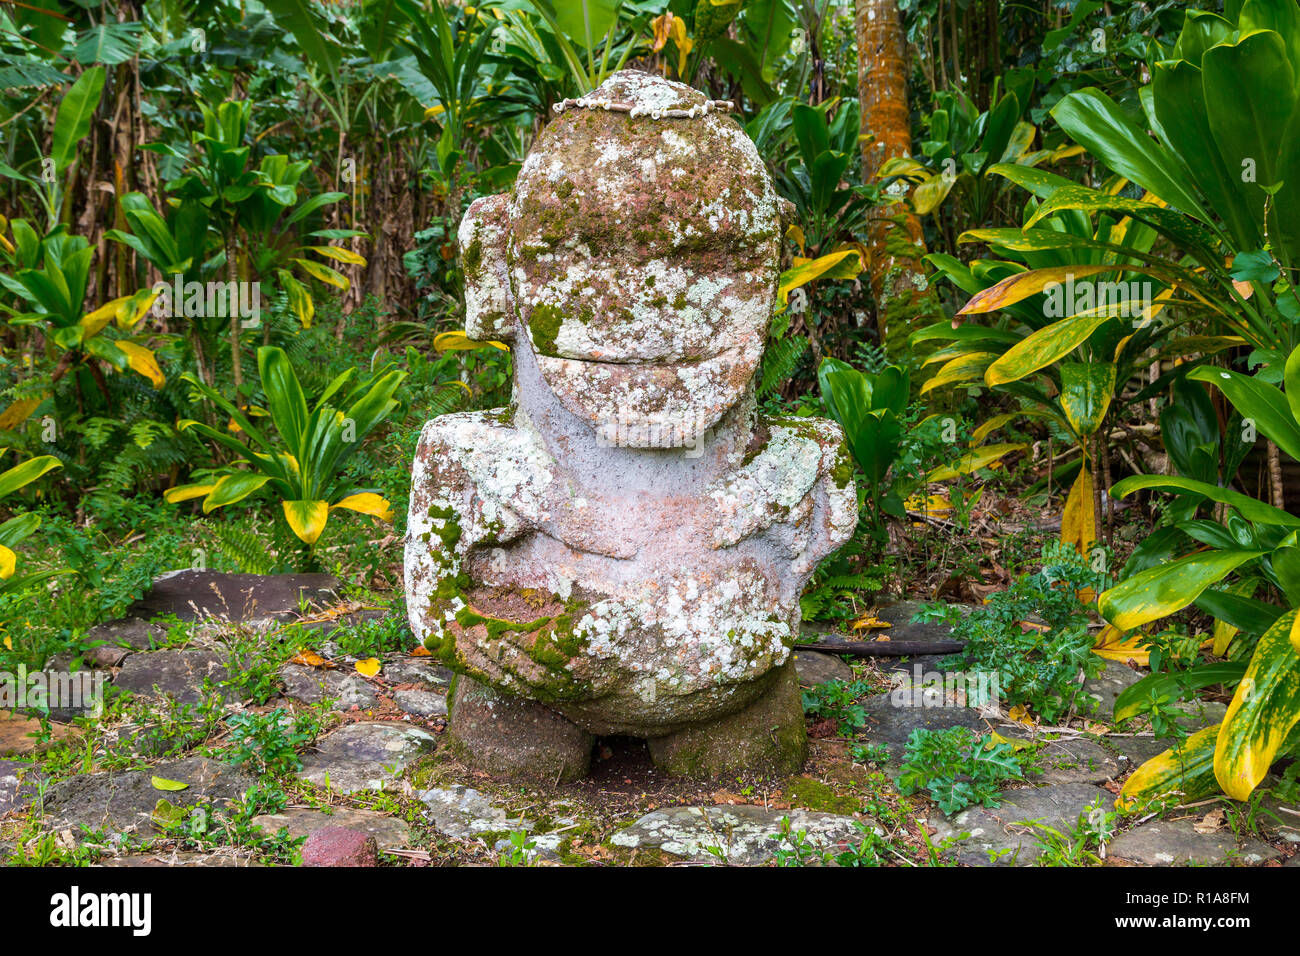 Smiling tiki. Pierres de taille - Polynesian tiki statue idole sacré caché dans la jungle. L'île de Raivavae, Astral (Tubuai), Polynésie Française, Océanie Banque D'Images